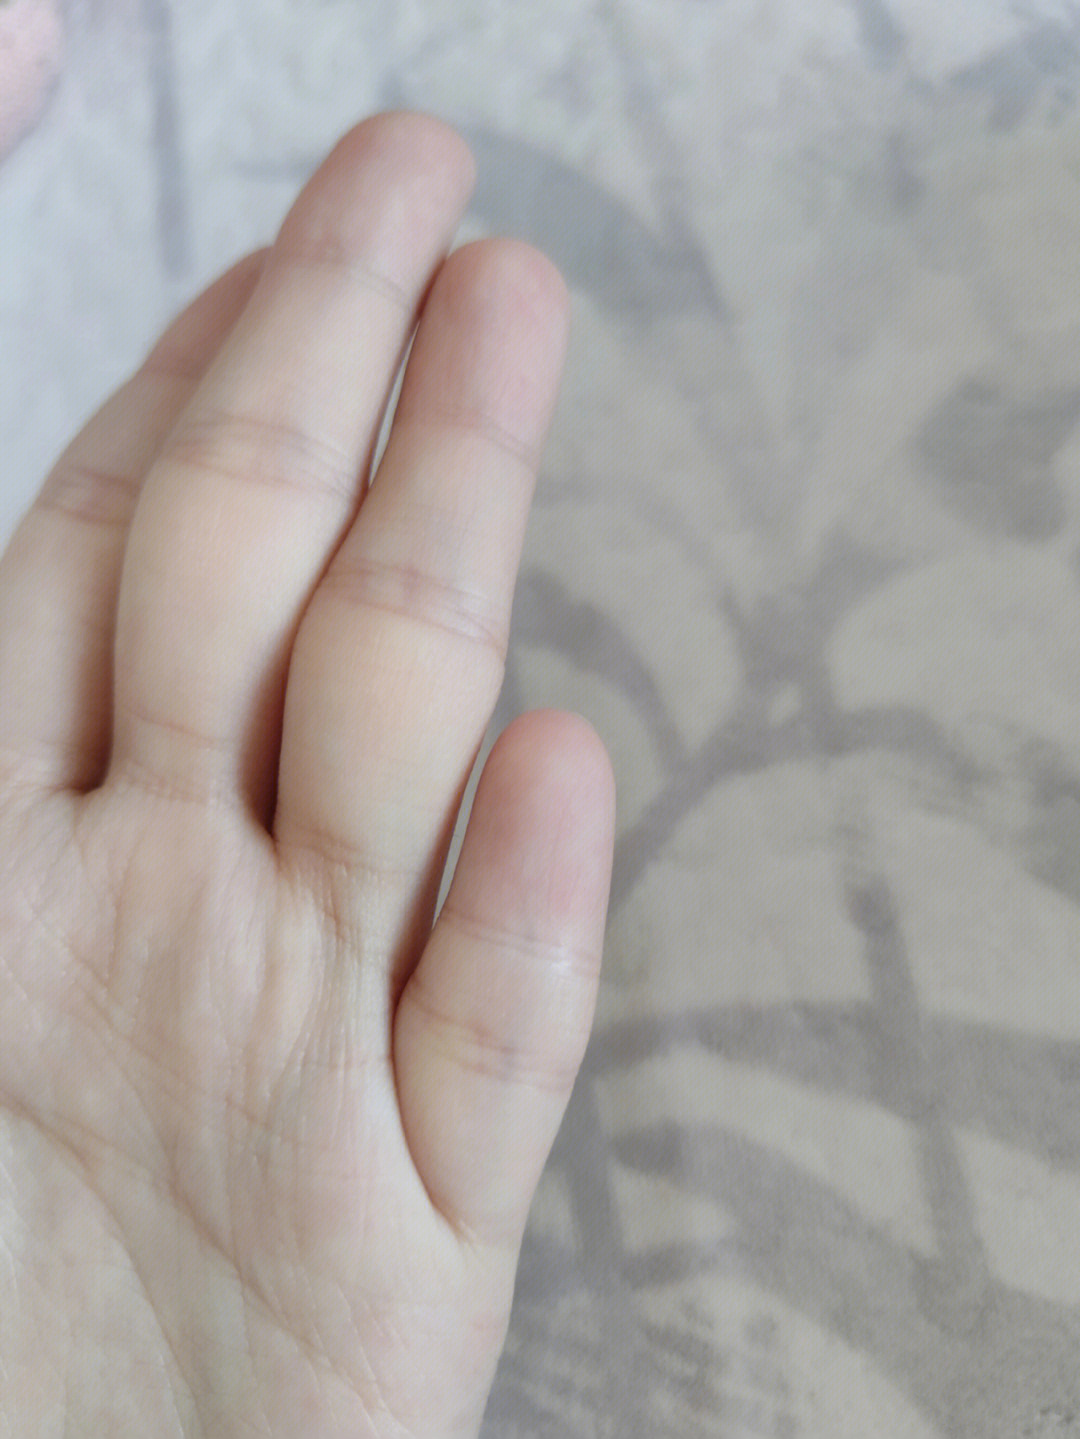 握拳后关节是瘪的,没有其他手指那种突出的关节.